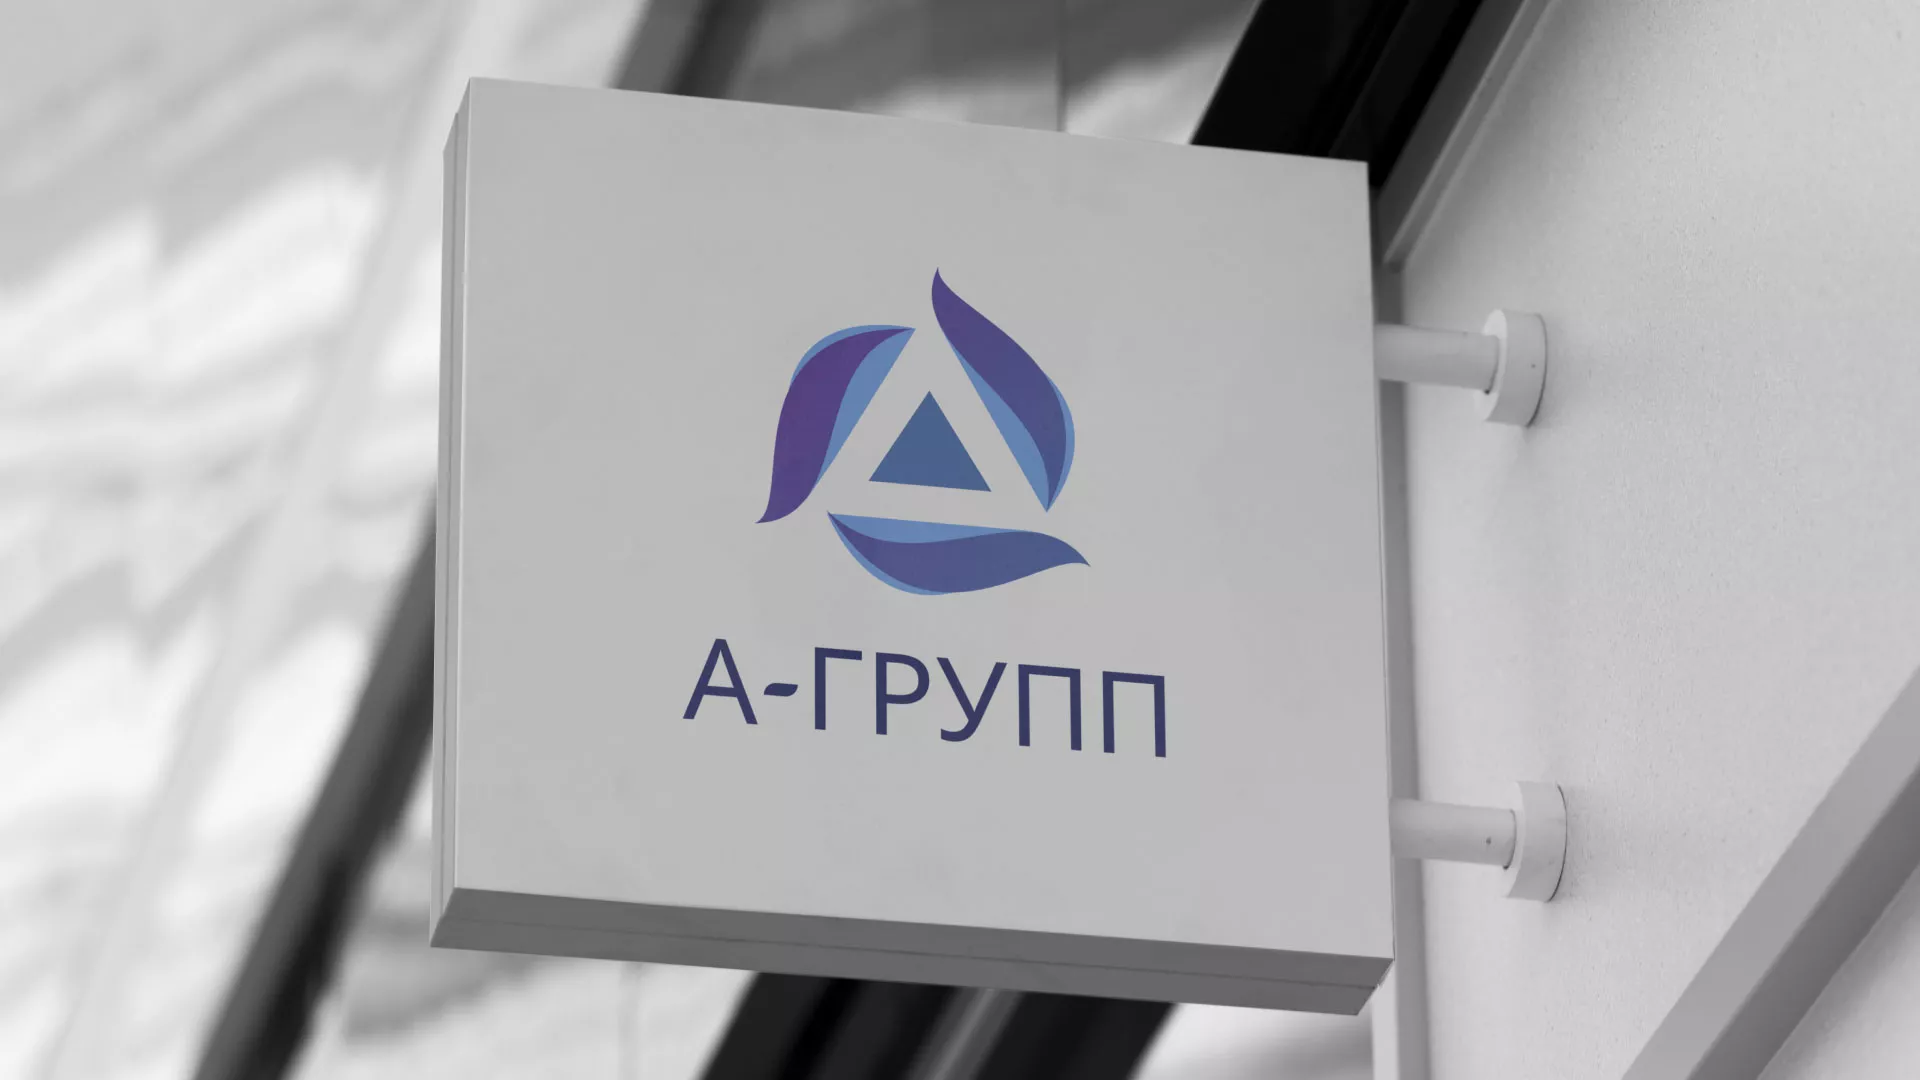 Создание логотипа компании «А-ГРУПП» в Звенигово